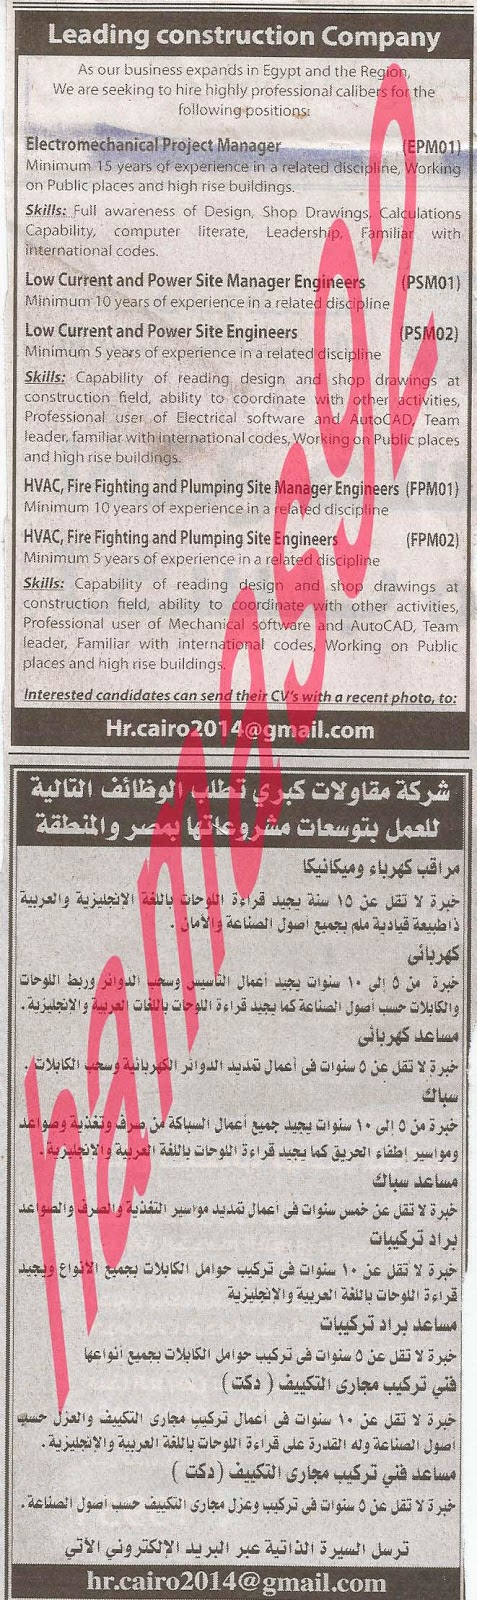 وظائف خالية فى جريدة الاهرام الجمعة 04-10-2013 6